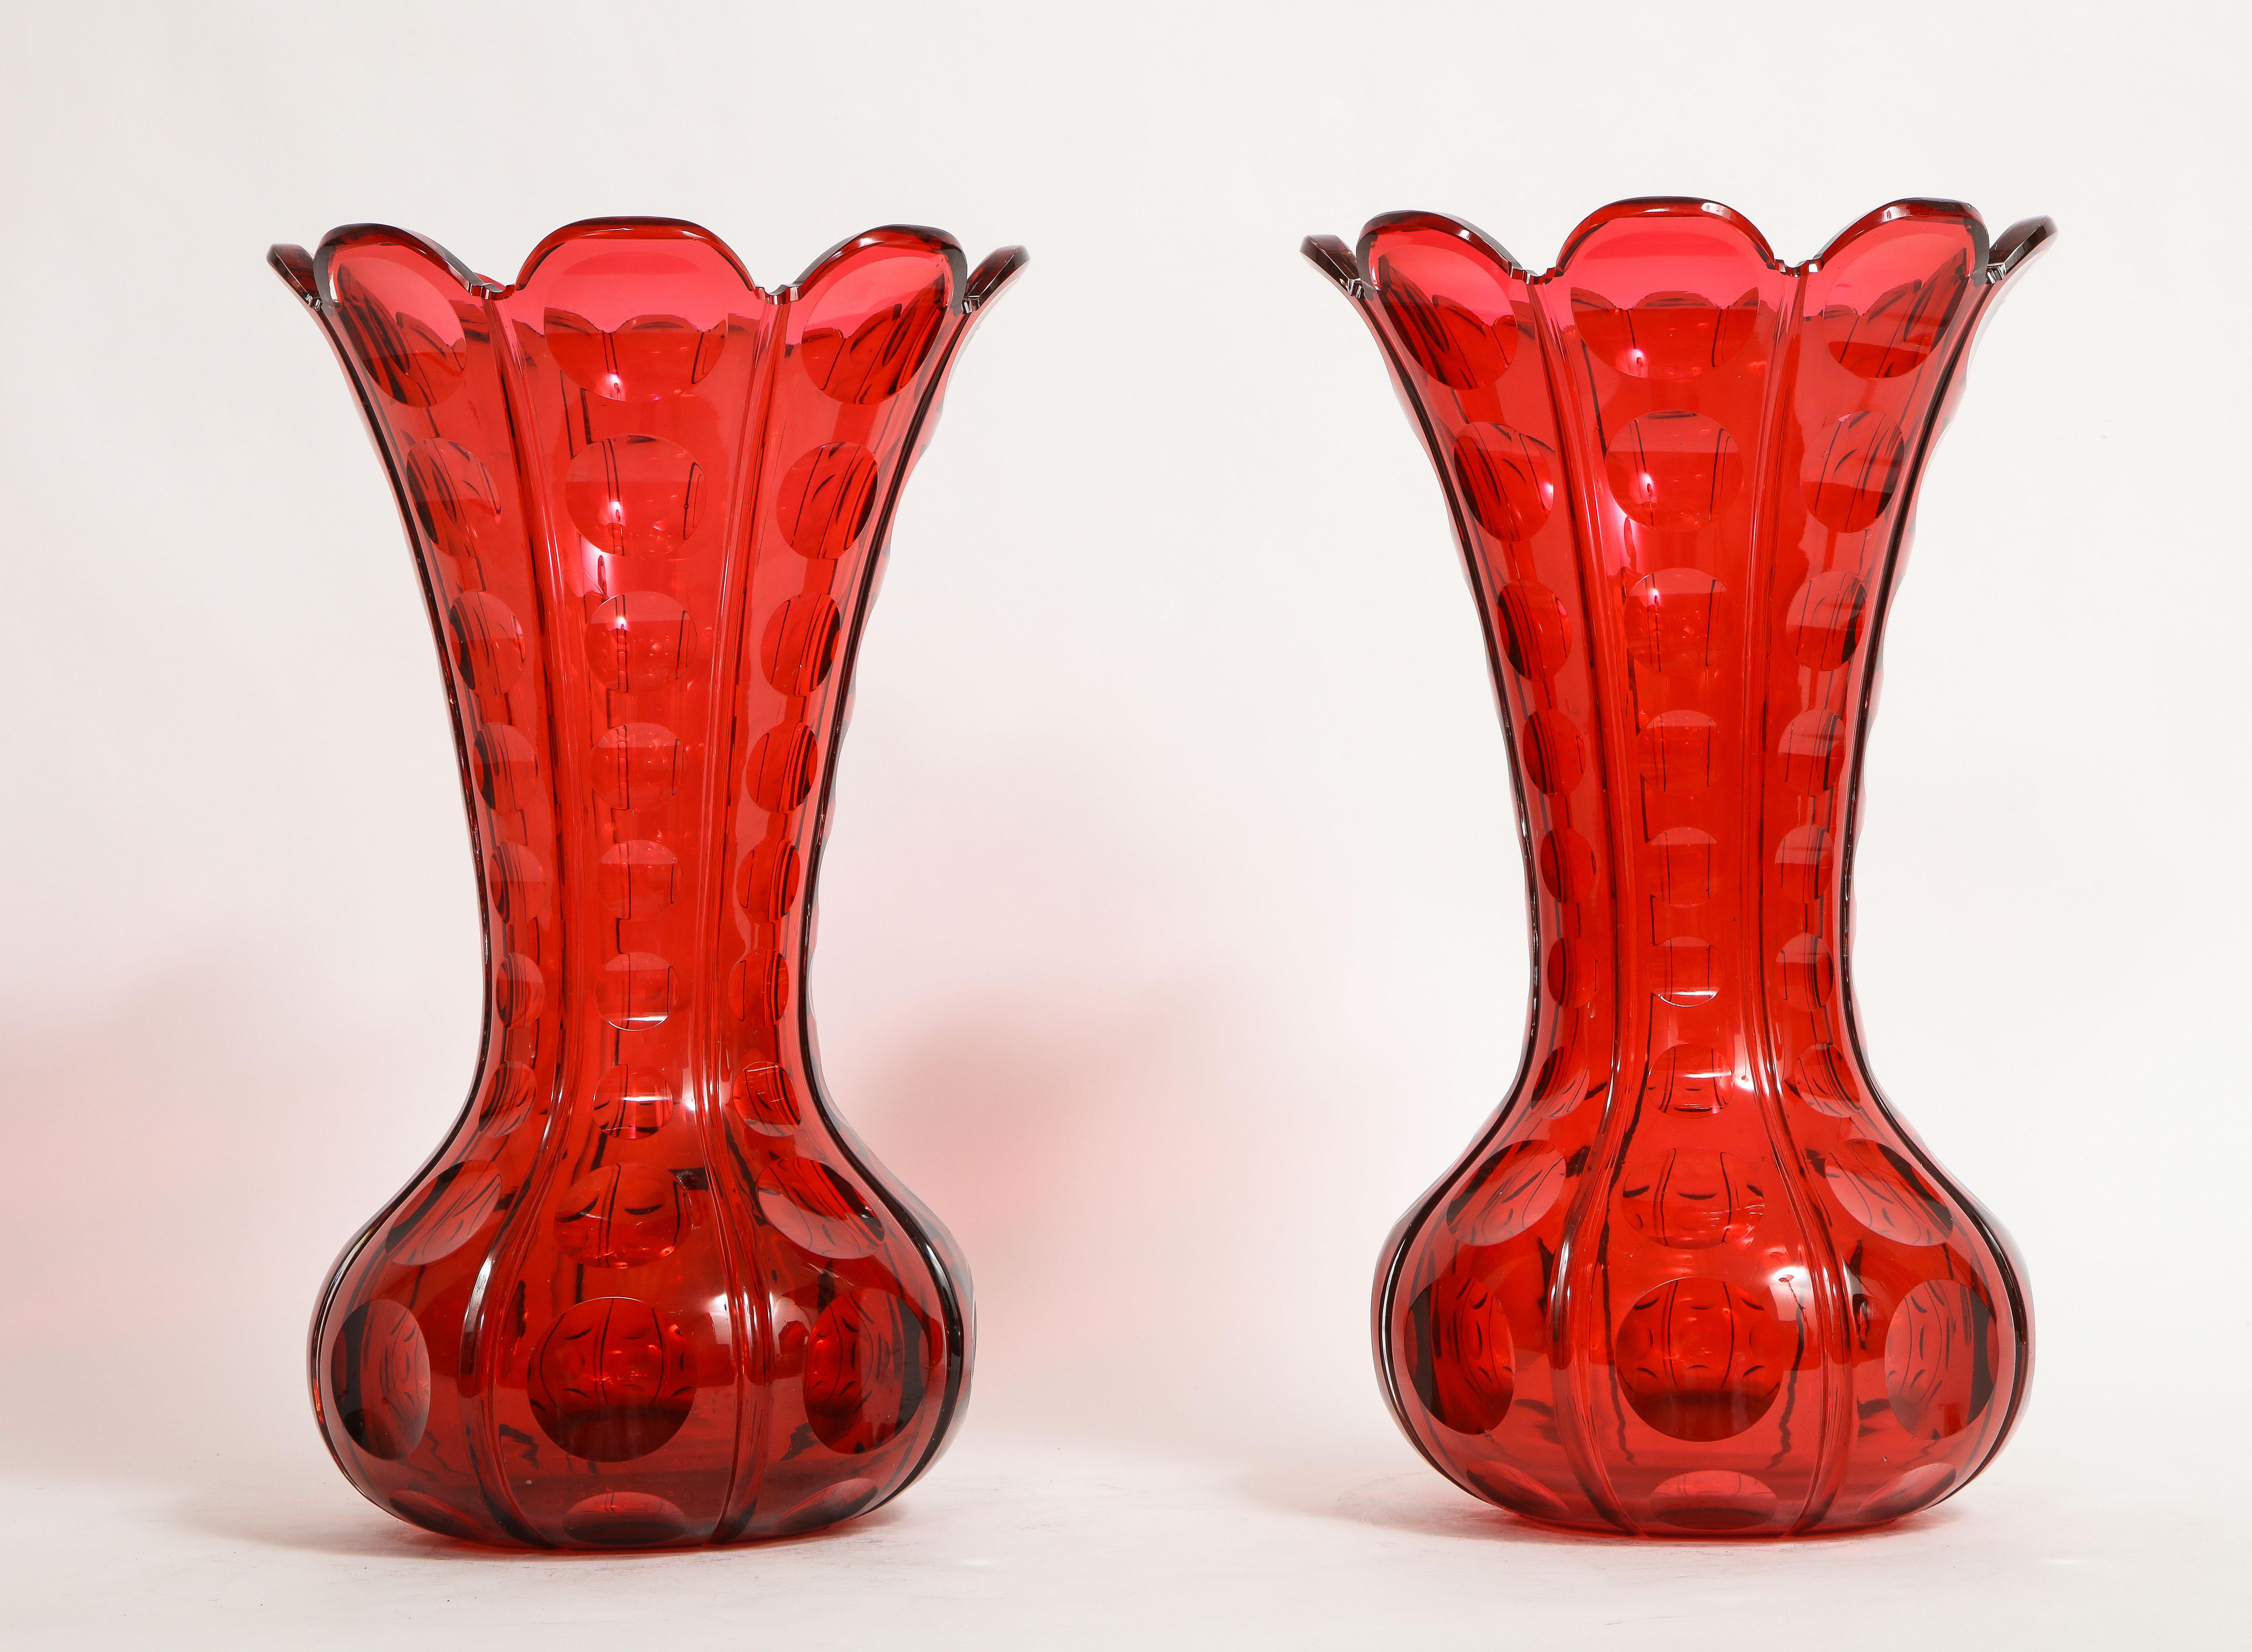 Une paire fantastique et rare de vases en cristal rouge rubis de Baccarat du 19ème siècle de qualité magnifique. Chacune est magnifiquement sculptée à la main et détaillée avec le meilleur cristal rouge rubis fabriqué par Baccarat en France. Ils